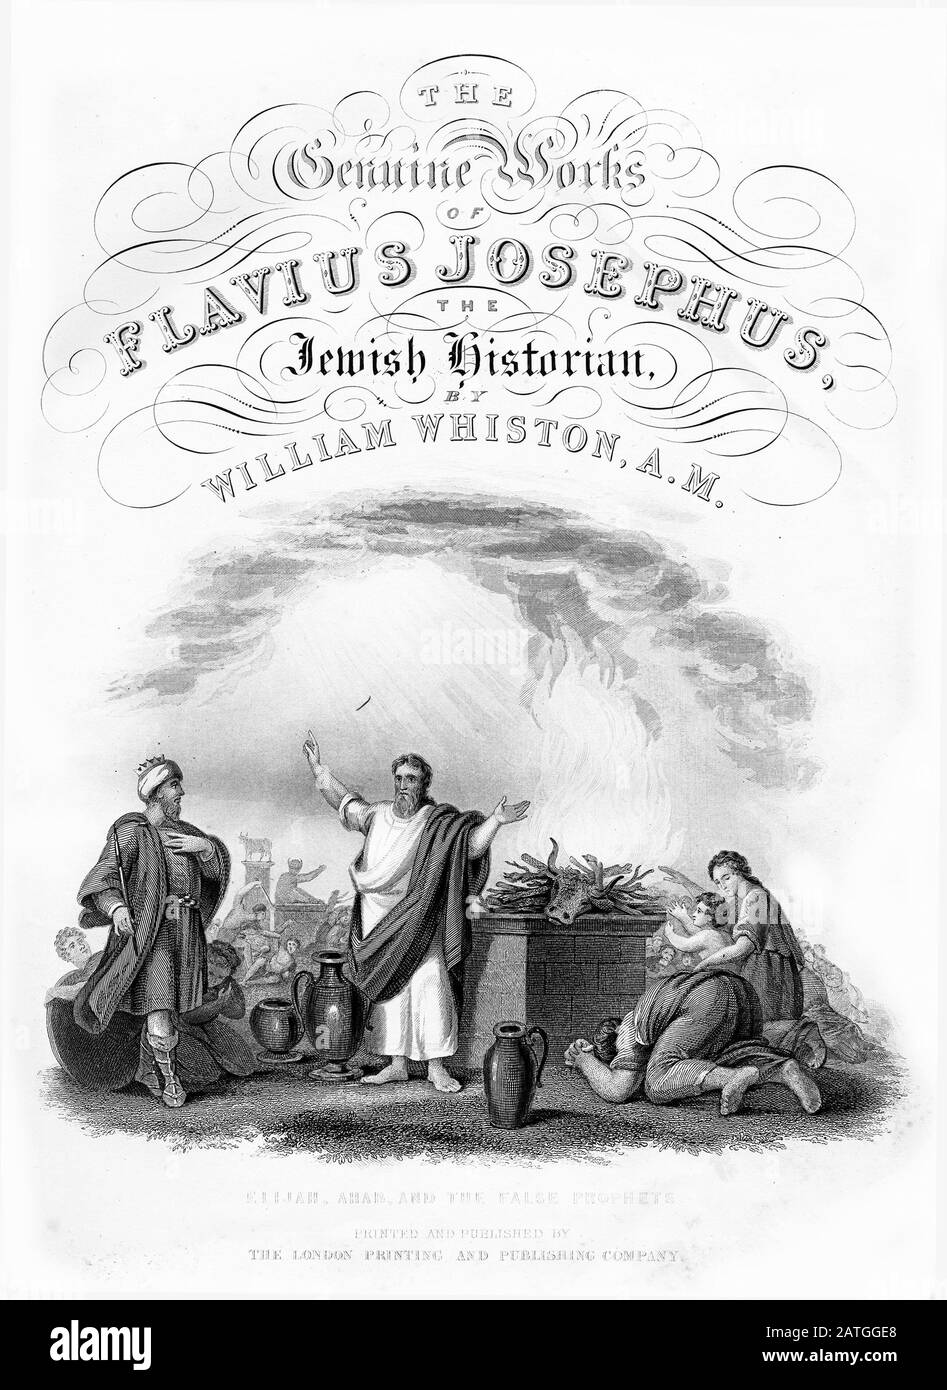 Titelseite einer Ausgabe von "Joseph's featuring Elijah and the Prophet of Baal", die im 19. Jahrhundert gedruckt wurde. Stockfoto